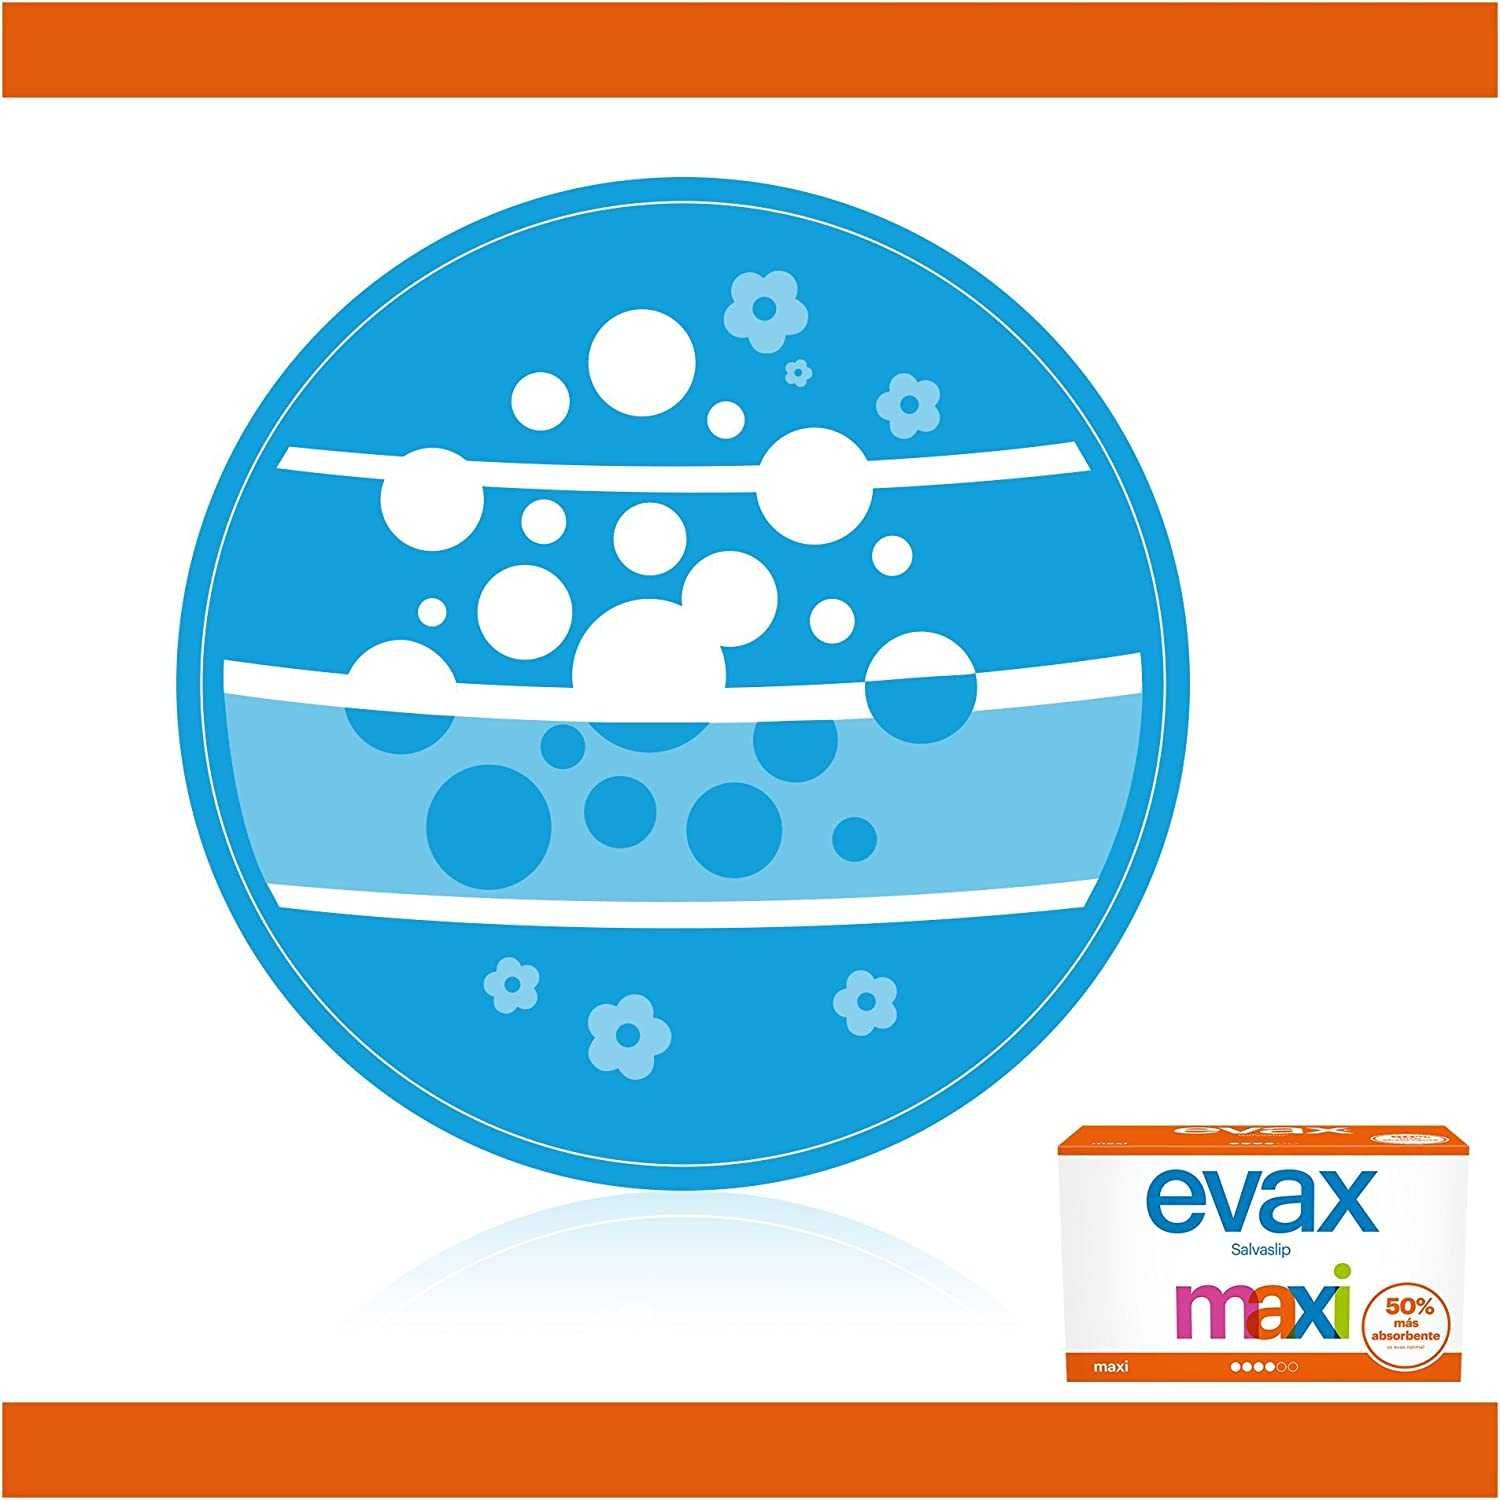 EVAX MAXI wkładki higieniczne 40 sztuk